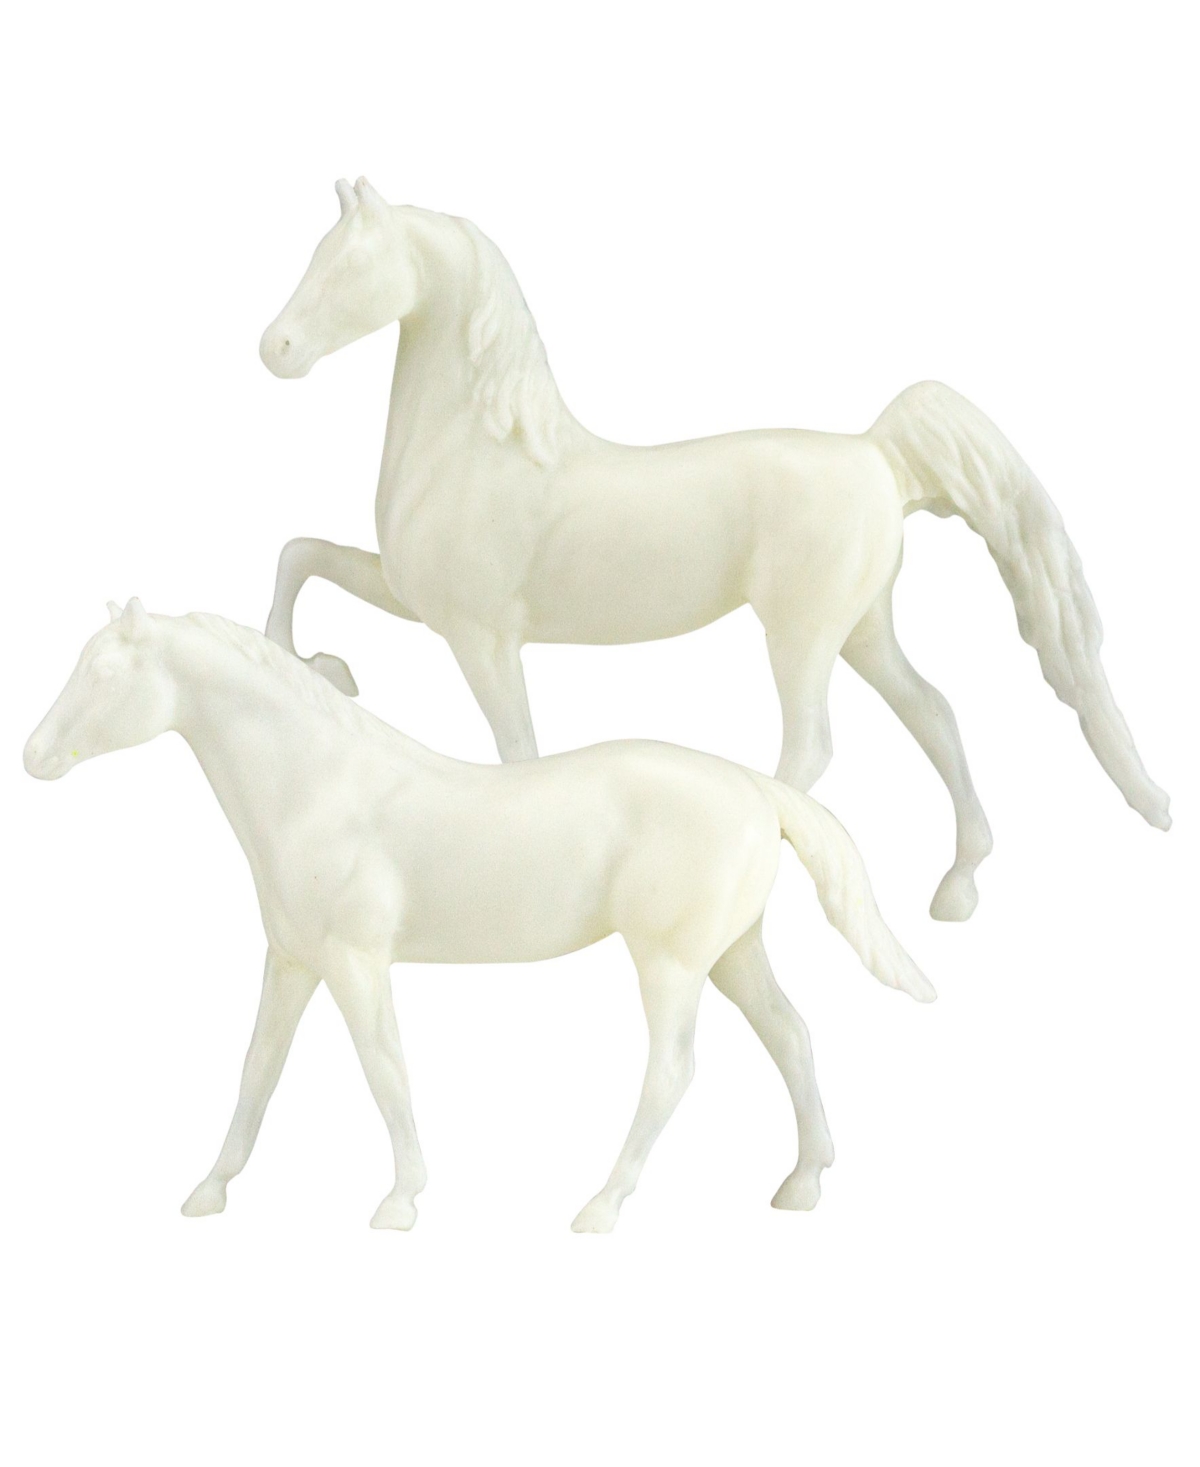 Horses Paint Your Own Horse Set, 11 Piece - Multi